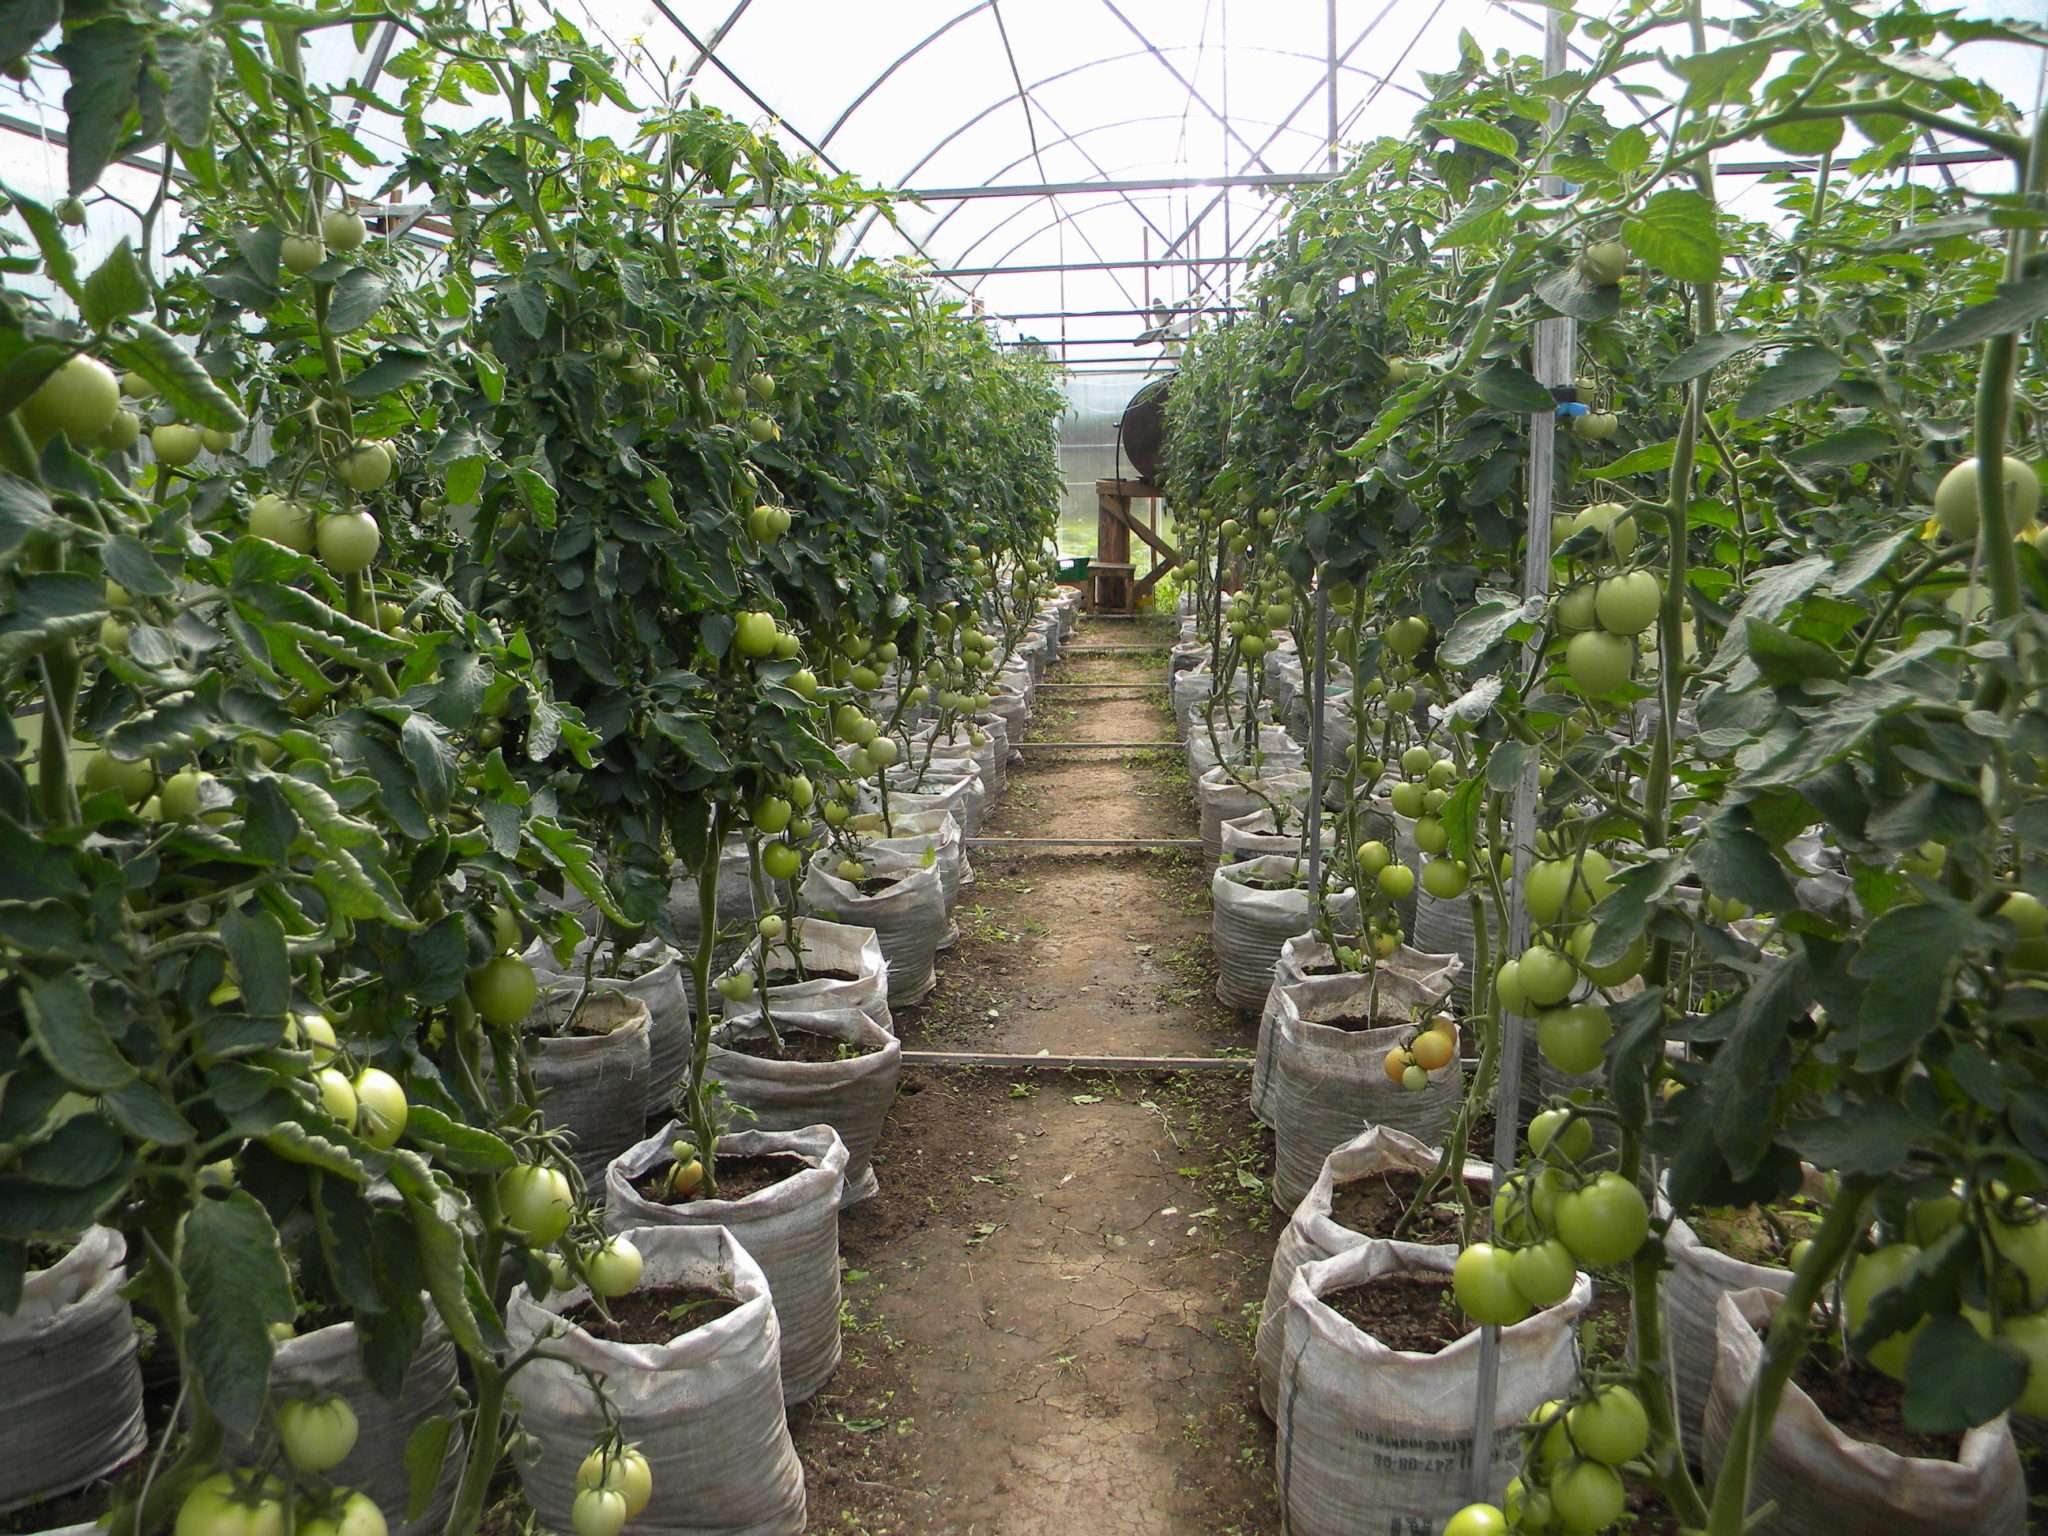 Parhaat tomaattilajikkeet polykarbonaattikasvihuoneeseen